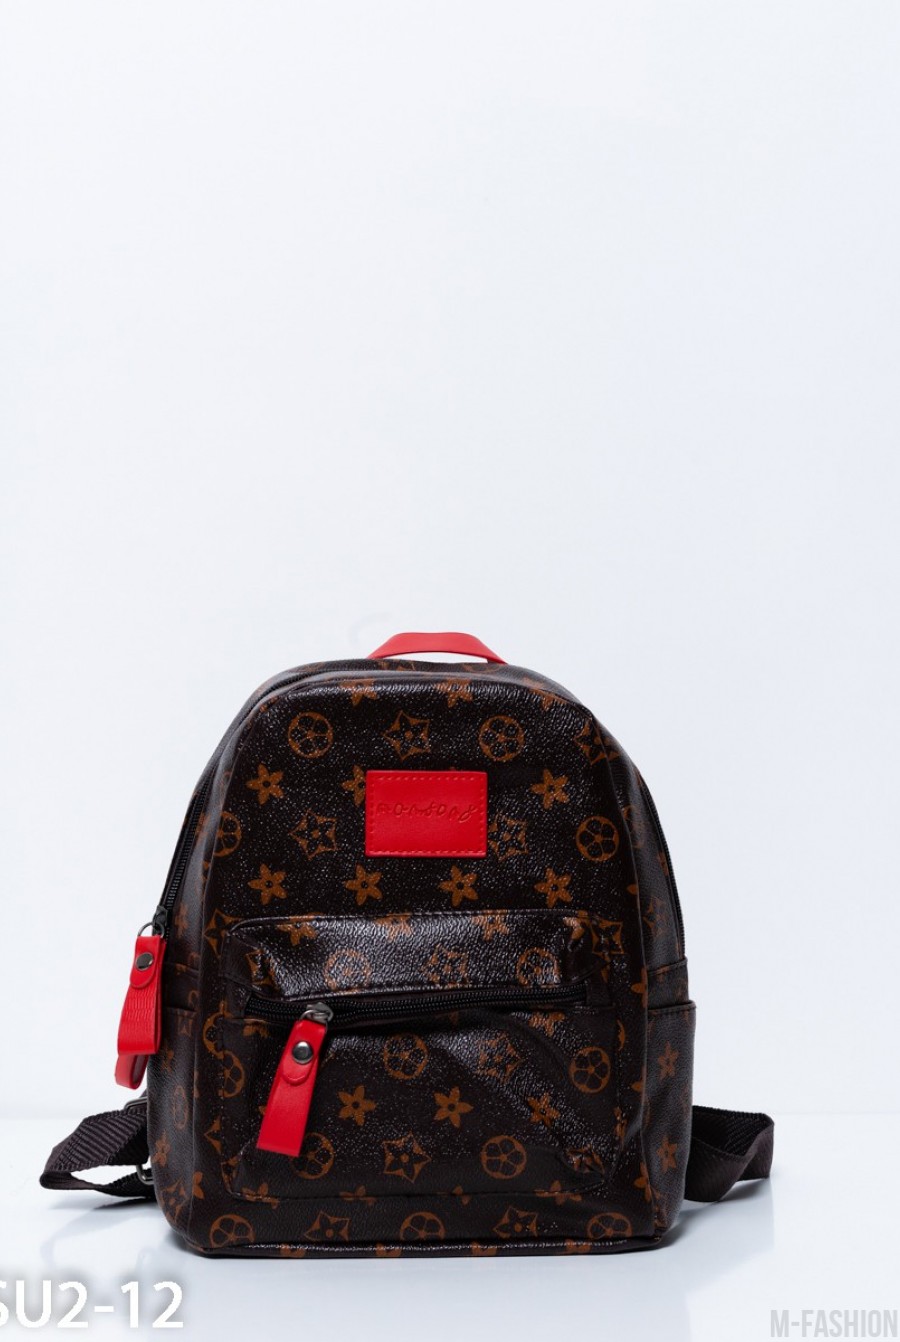 Коричневый рюкзак с принтом и красными вставками - Фото 1